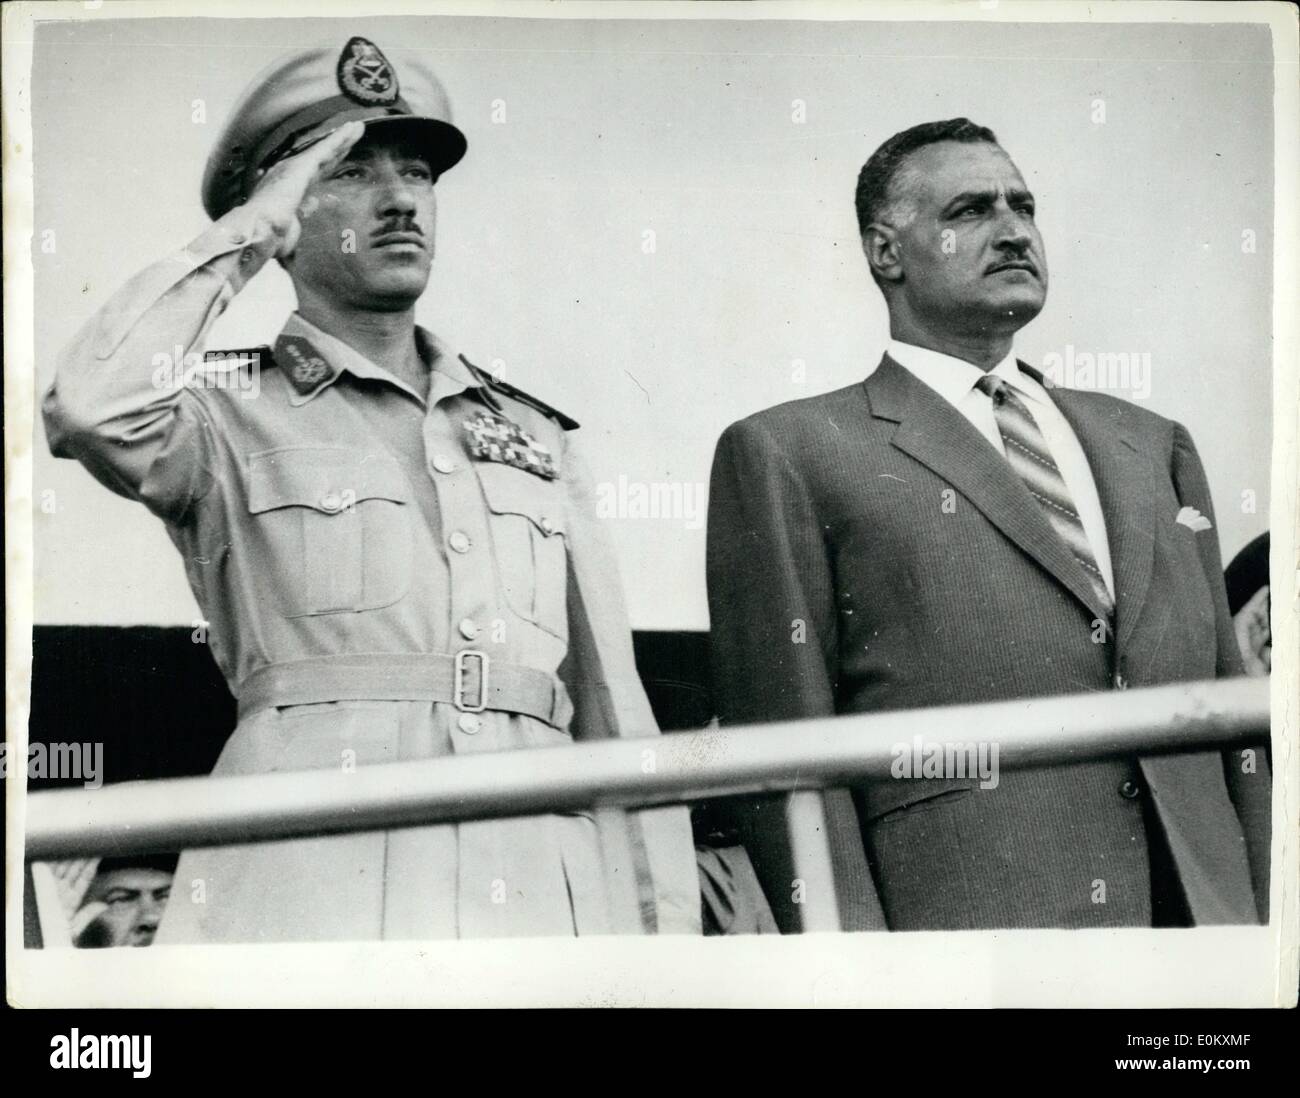 Lug. 07, 1952 - Nasser mostra fuori i suoi missili in Cairo. Si salutano anniversario a marzo del passato: il razzo egiziano sono stati il pezzo centrale del recente sfilata militare attraverso le strade del Cairo tenuto per festeggiare il 10th. Anniversario della Rivoluzione. I razzi - 'conquistatore" con una gamma di 400 miglia e Victor (gamma di 250 miglia) - sono, secondo il presidente Nasser - ora sotto la produzione di massa in Egitto. Gli osservatori sono stati rapidi a notare che i razzi portò Israele entro la gamma d'Egitto. La foto mostra il presidente Nasser accompagnato dal Maresciallo di Campo Abdul Hakim Amir C.I.C dell'UC Foto Stock